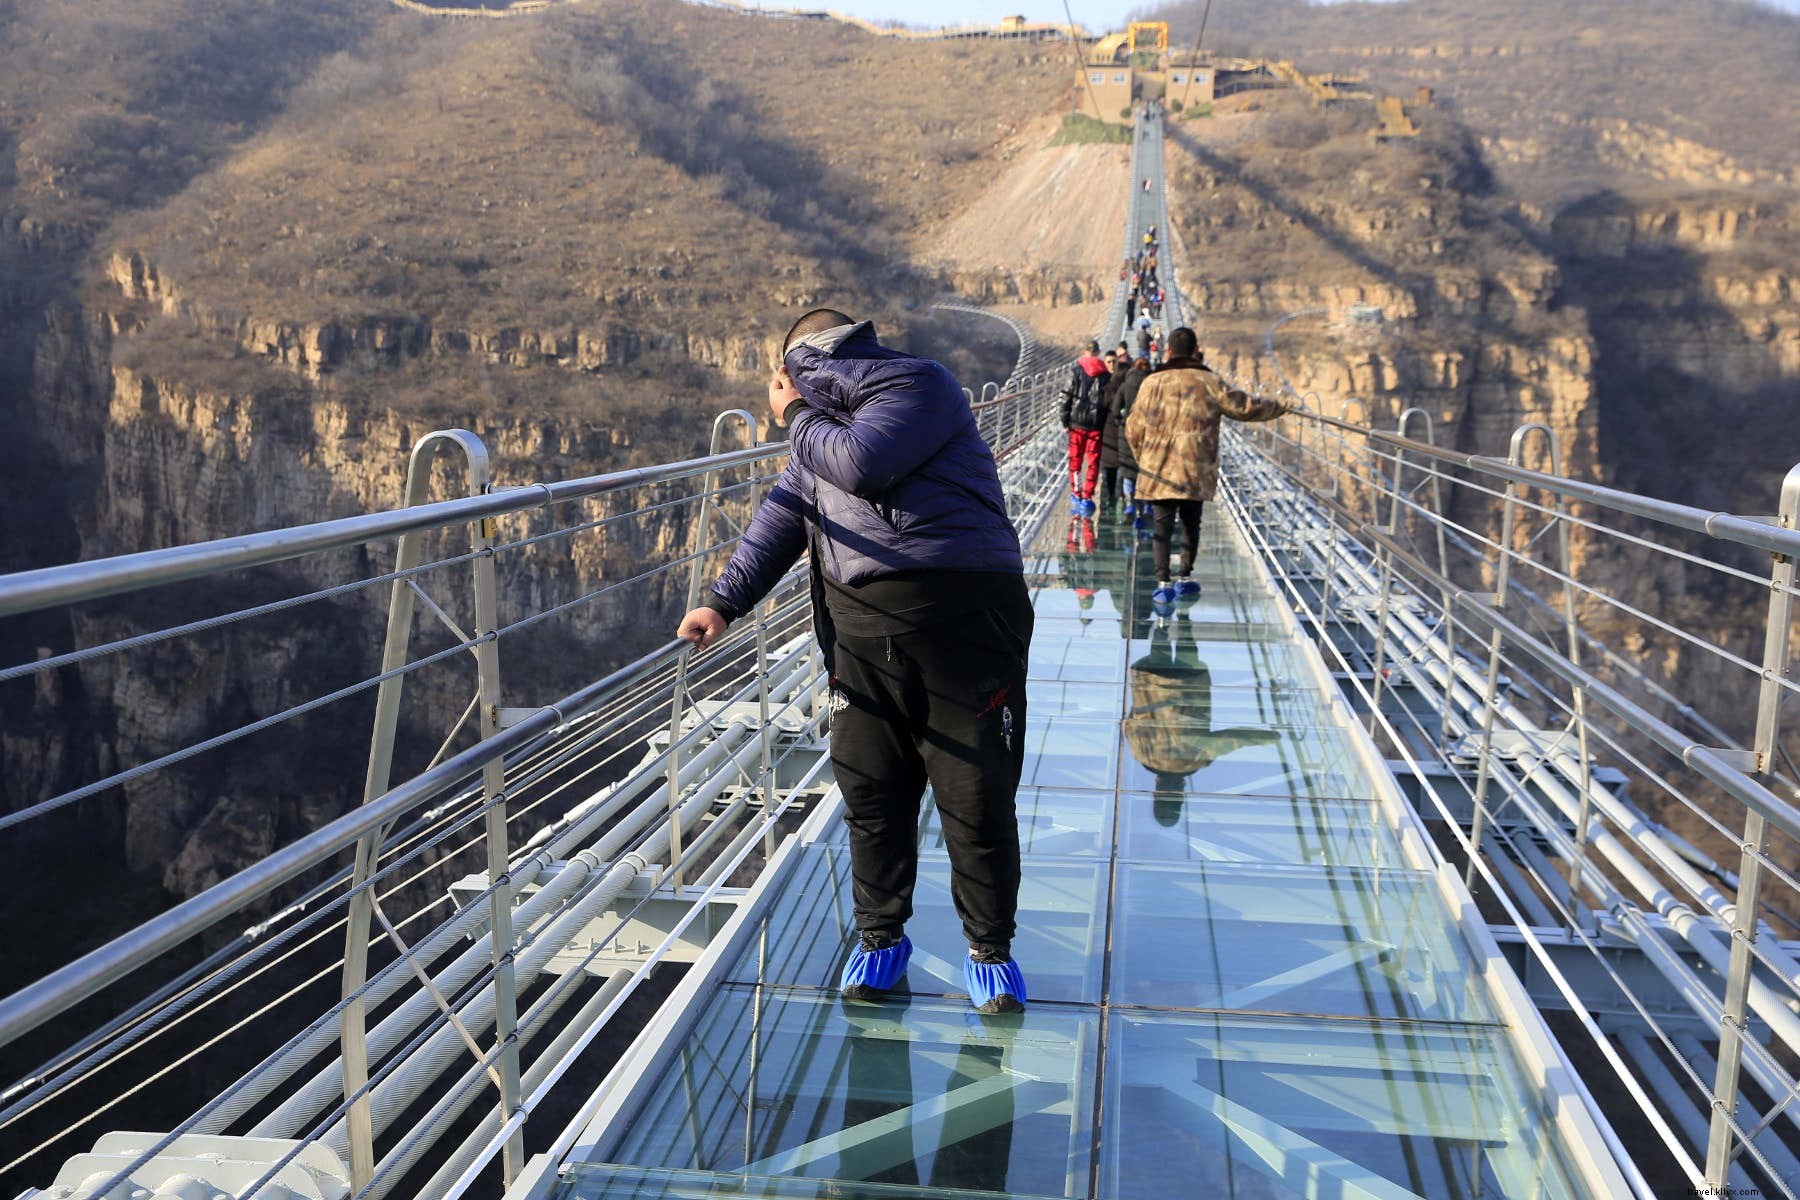 Défiez la gravité sur le nouveau pont de verre record de la Chine 